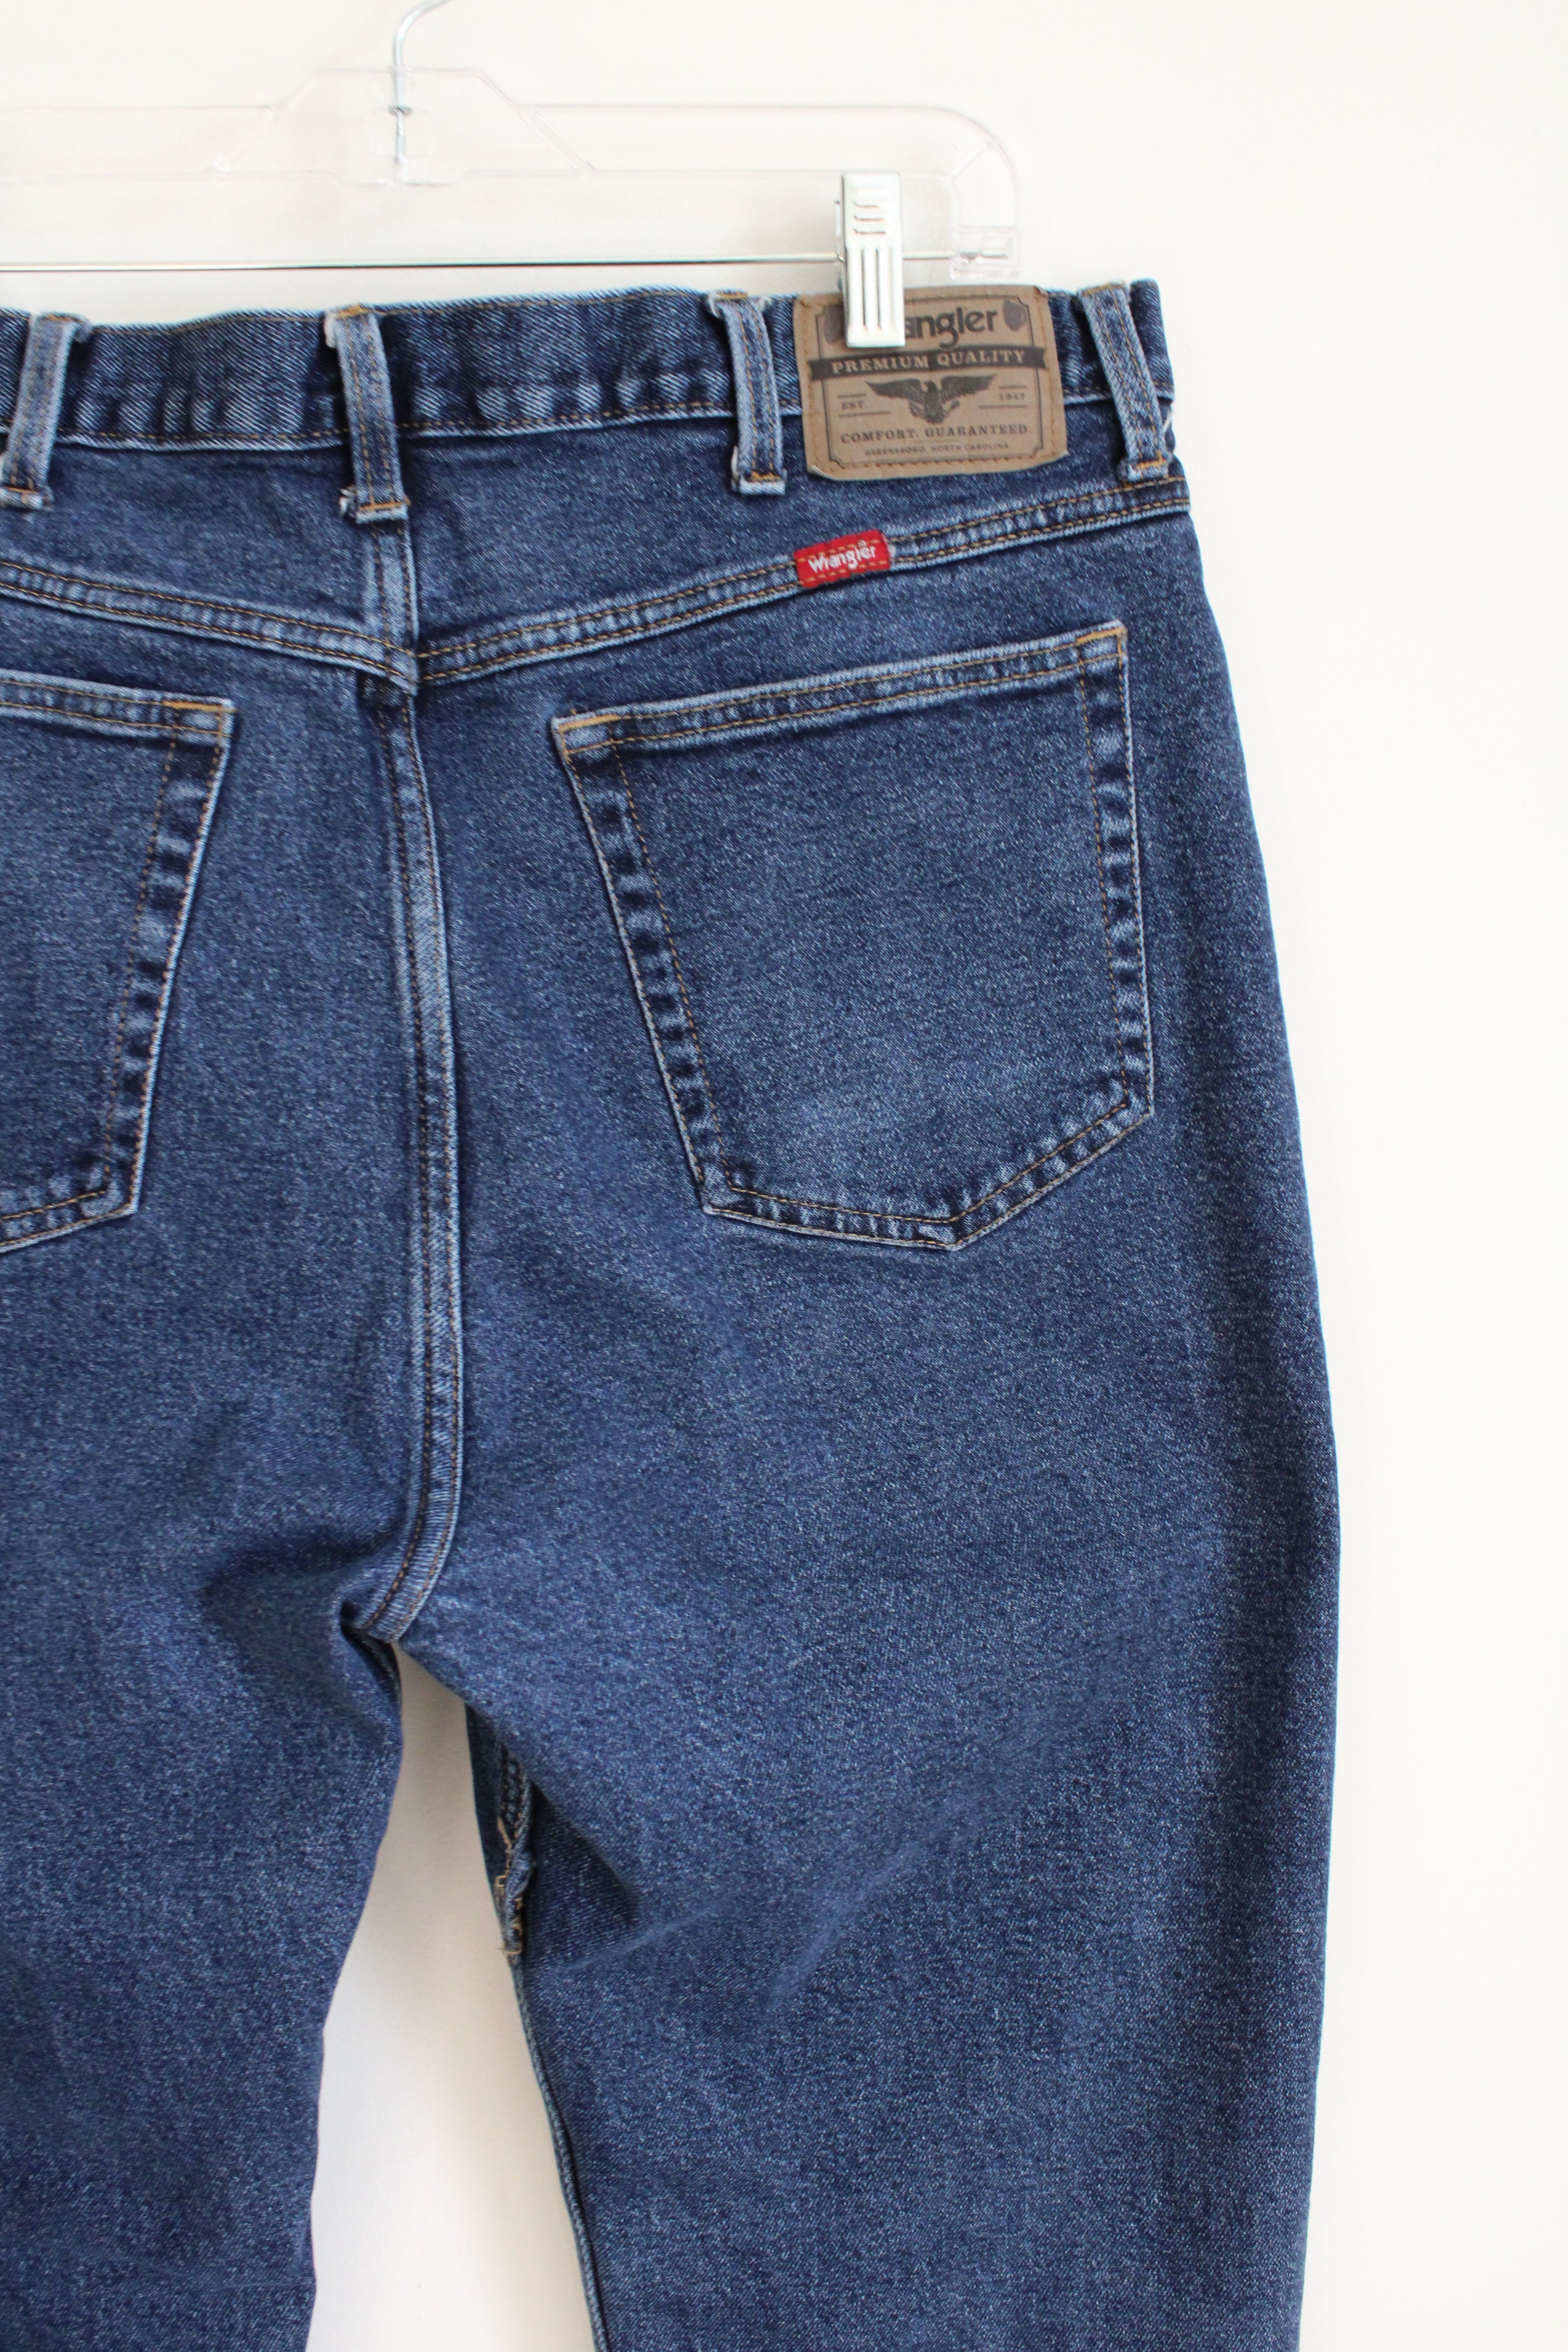 Wrangler Blue Jeans | 38X34